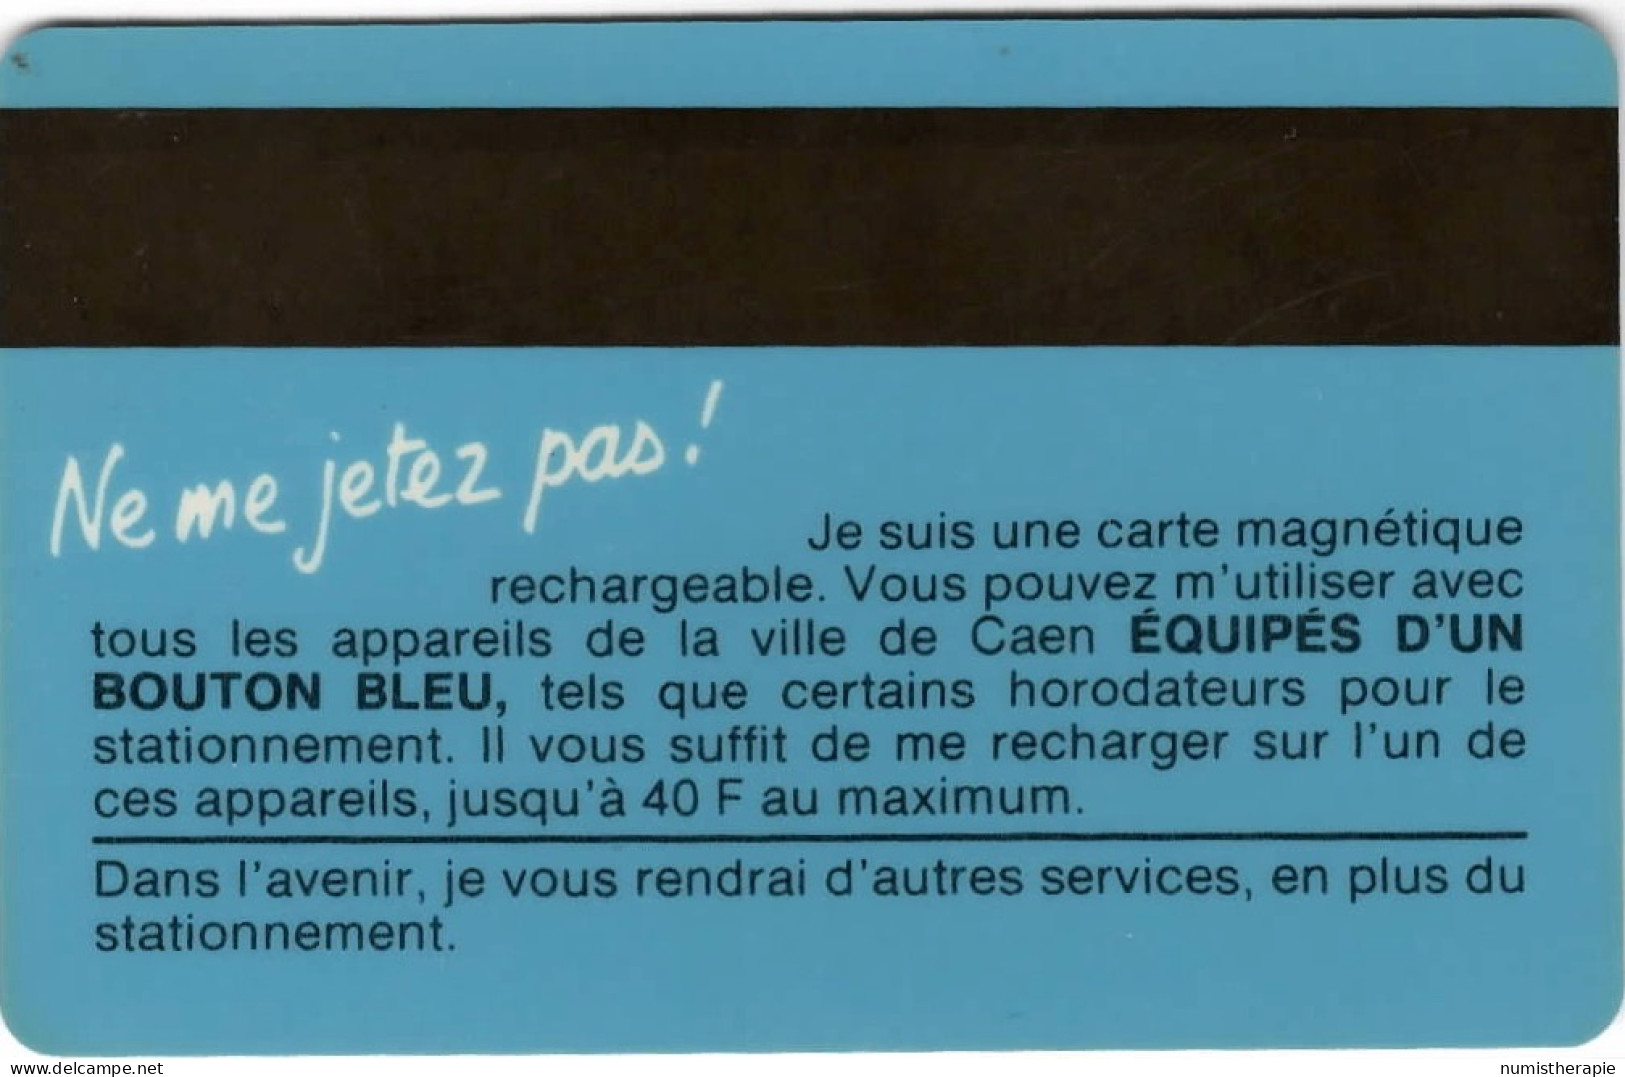 Stationnement Caen PIAF - PIAF Parking Cards